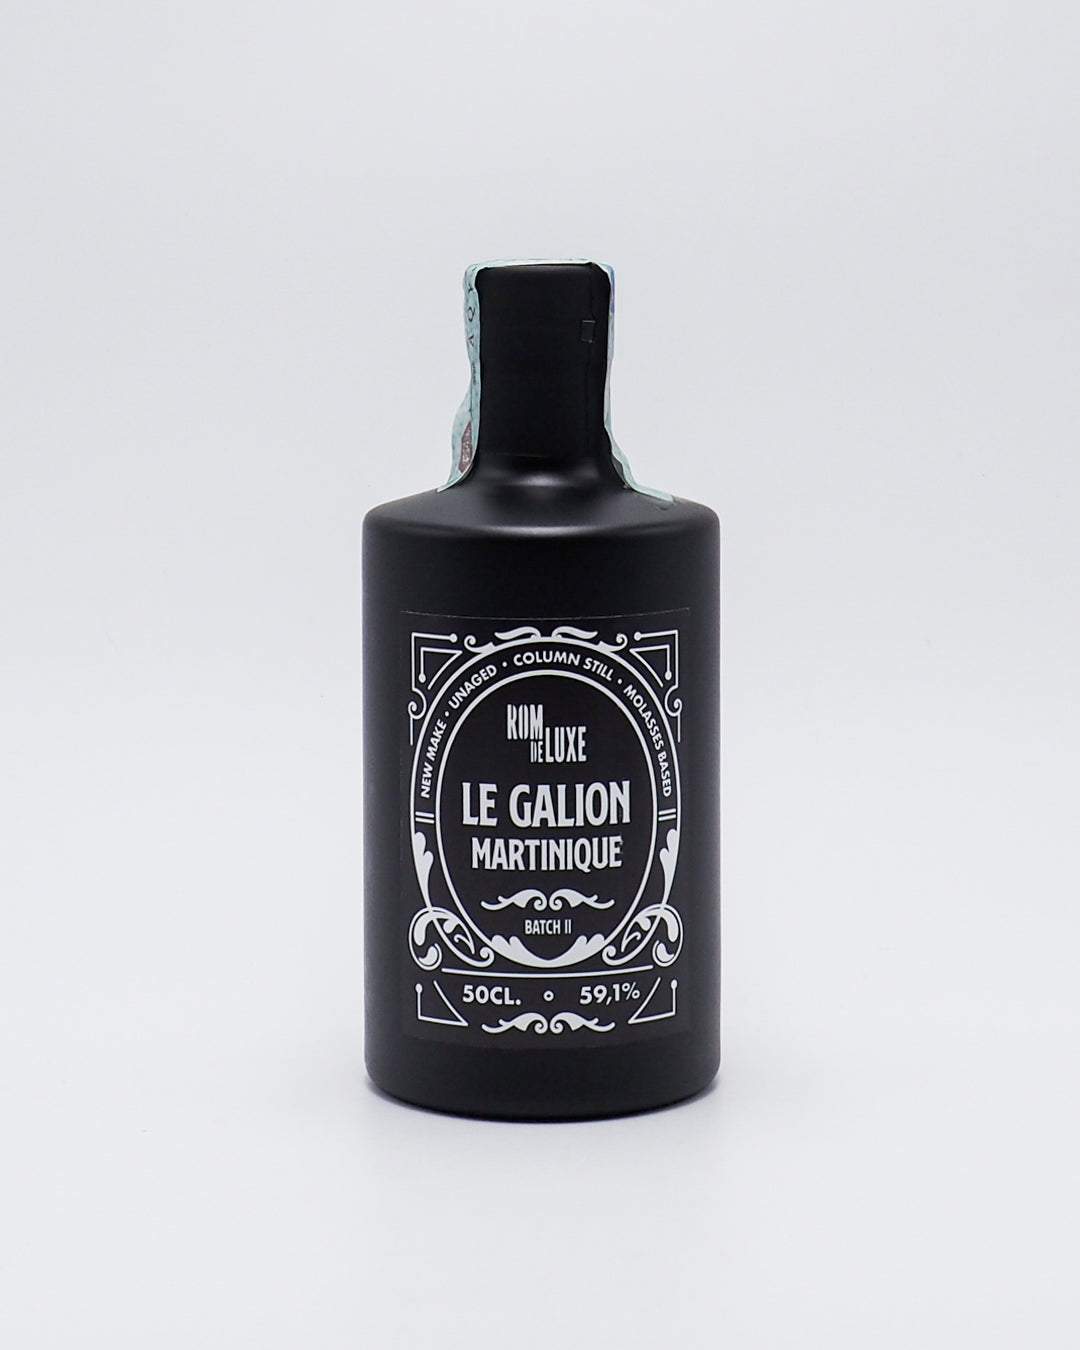 rum-le-galion-grand-arome-martinique-batch-ii-rom-de-luxe